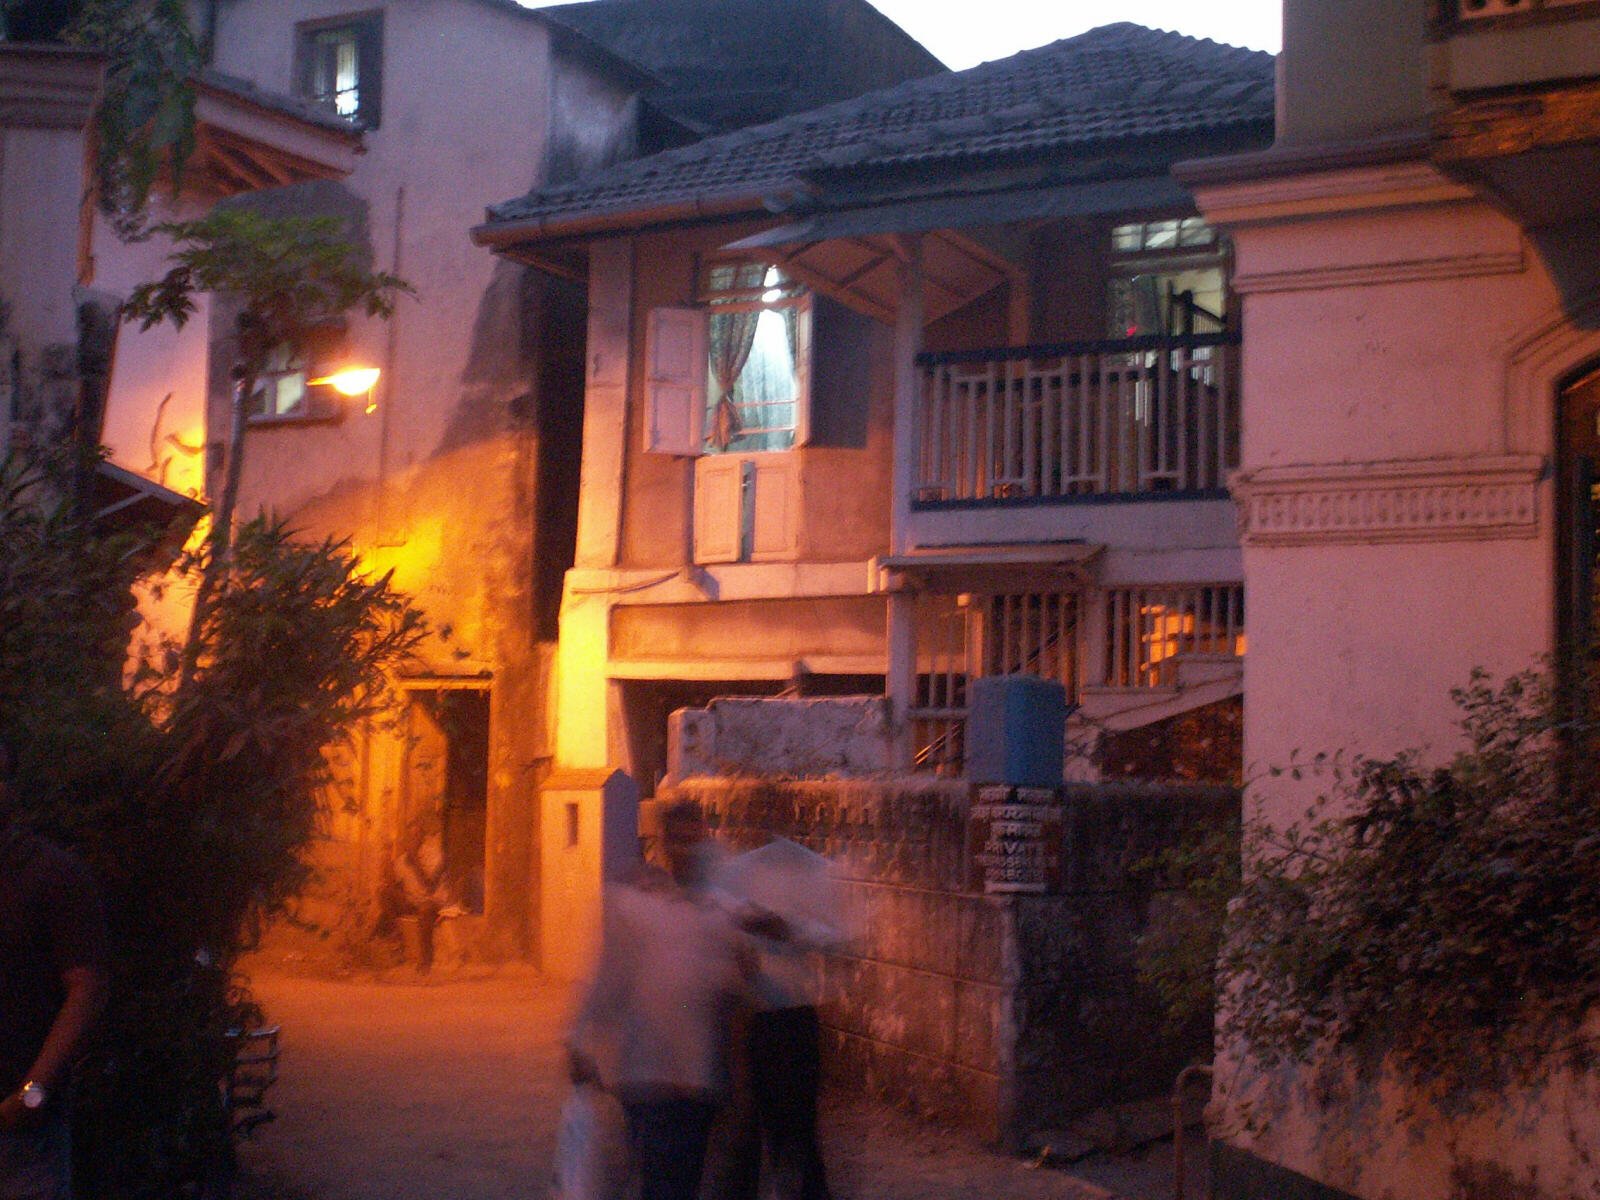 A house in Kotachi Wadi district of Bombay / Mumbai